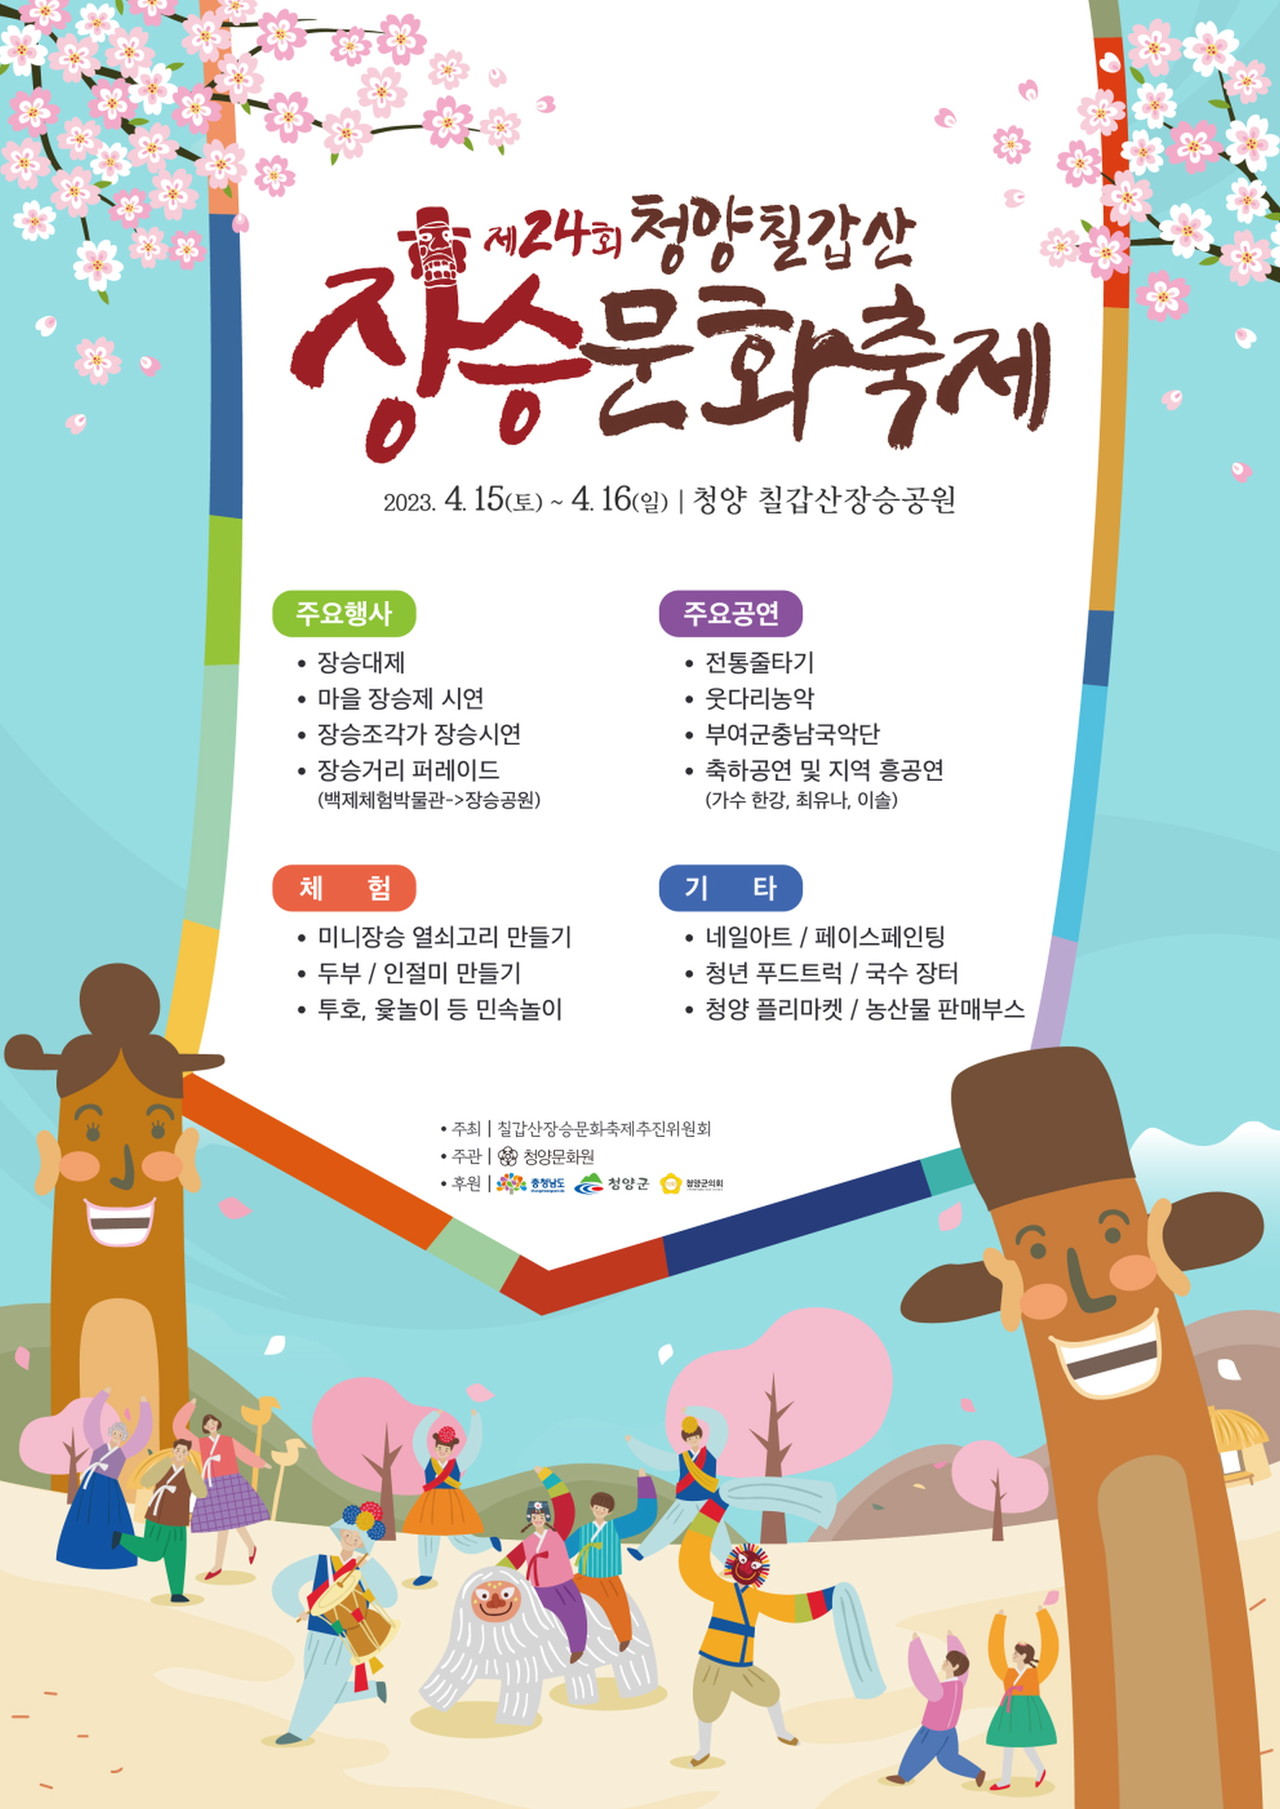 청양 칠갑산장승문화축제 4년 만에 15~16일 개최